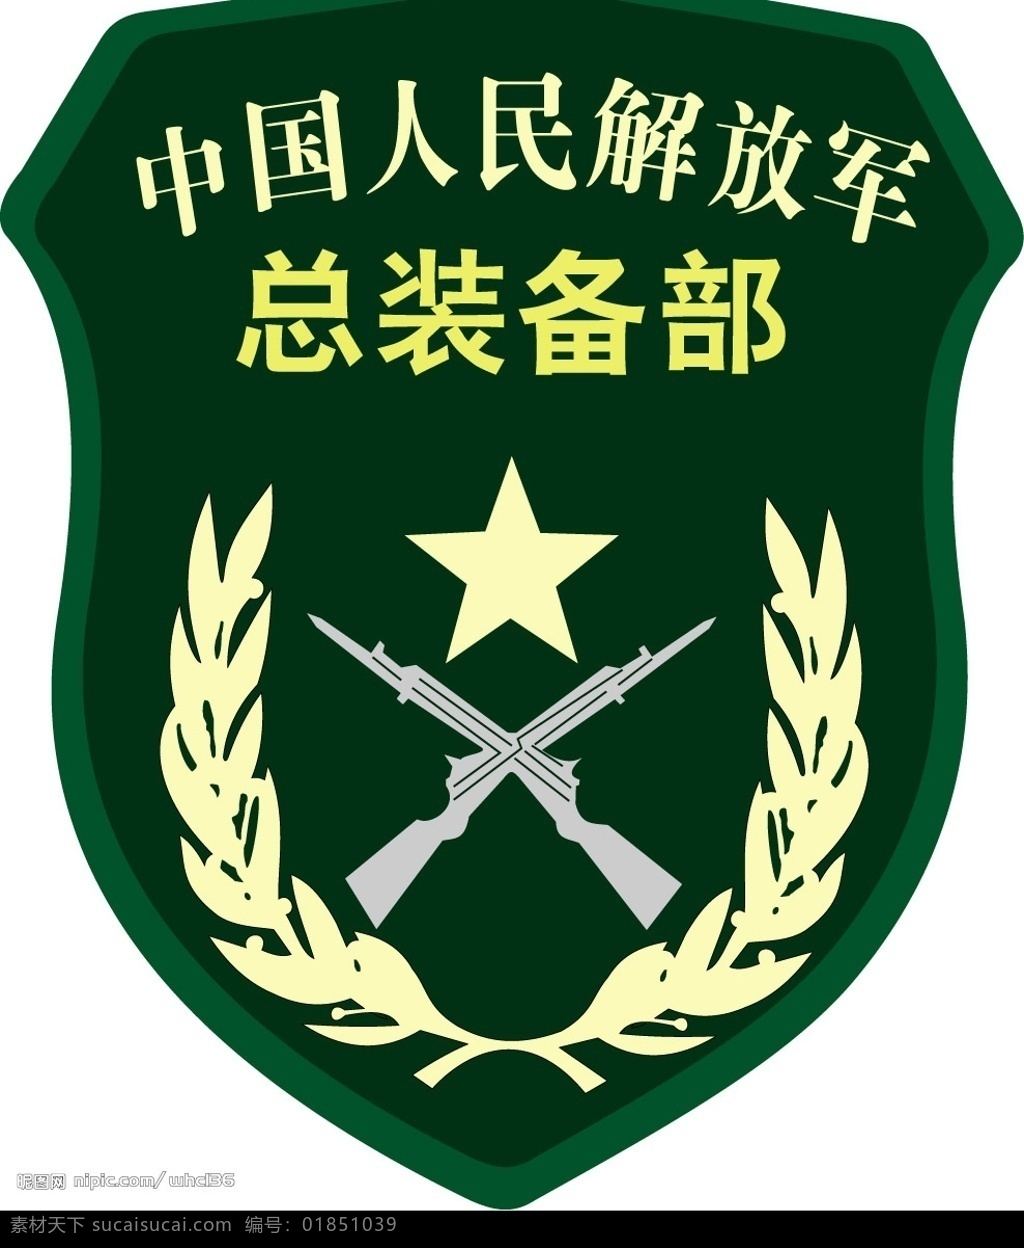 中国人民解放军 总装备部 臂章 标志 标识标志图标 公共标识标志 矢量图库